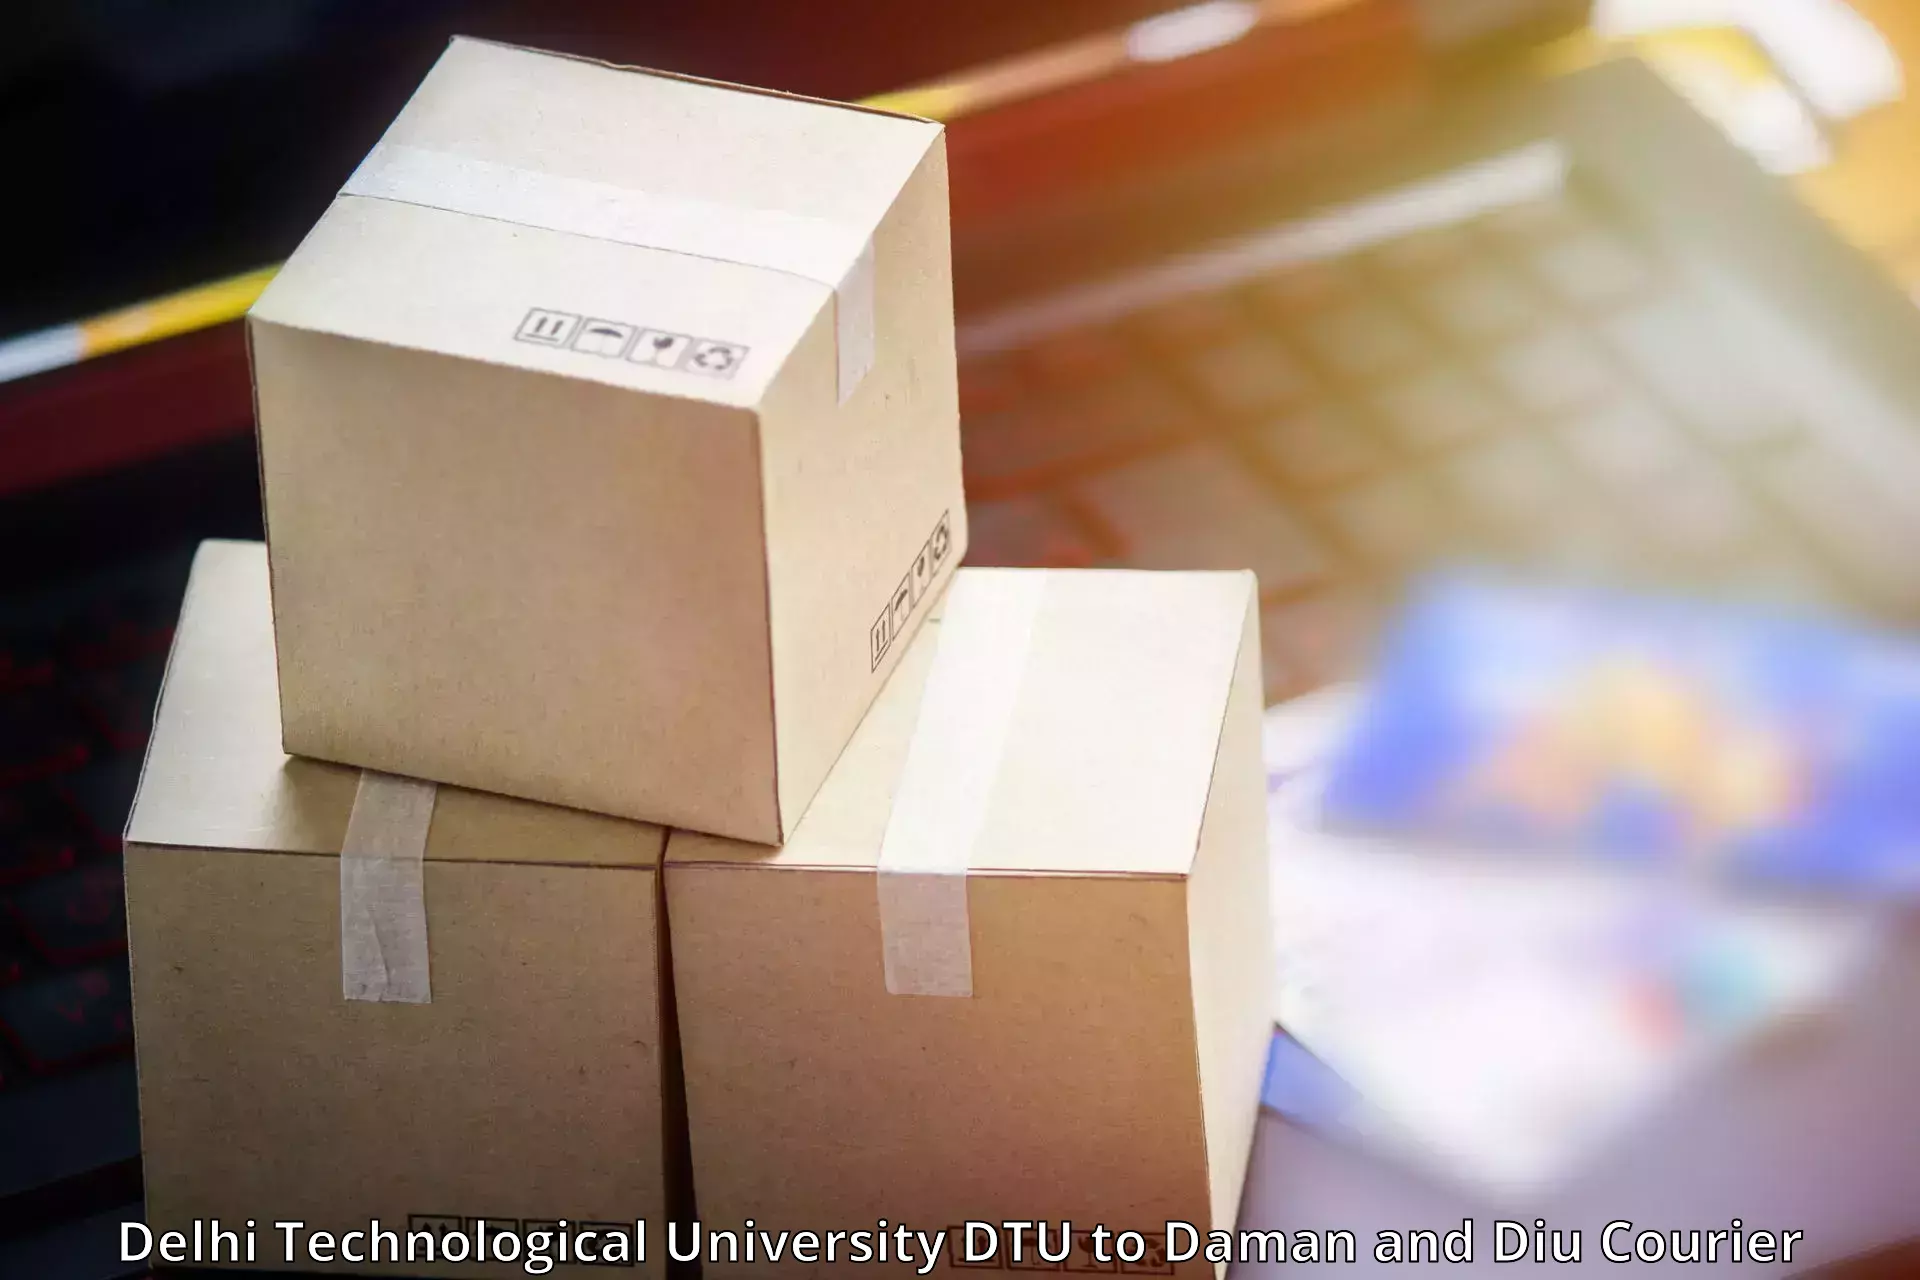 Courier dispatch services Delhi Technological University DTU to Daman